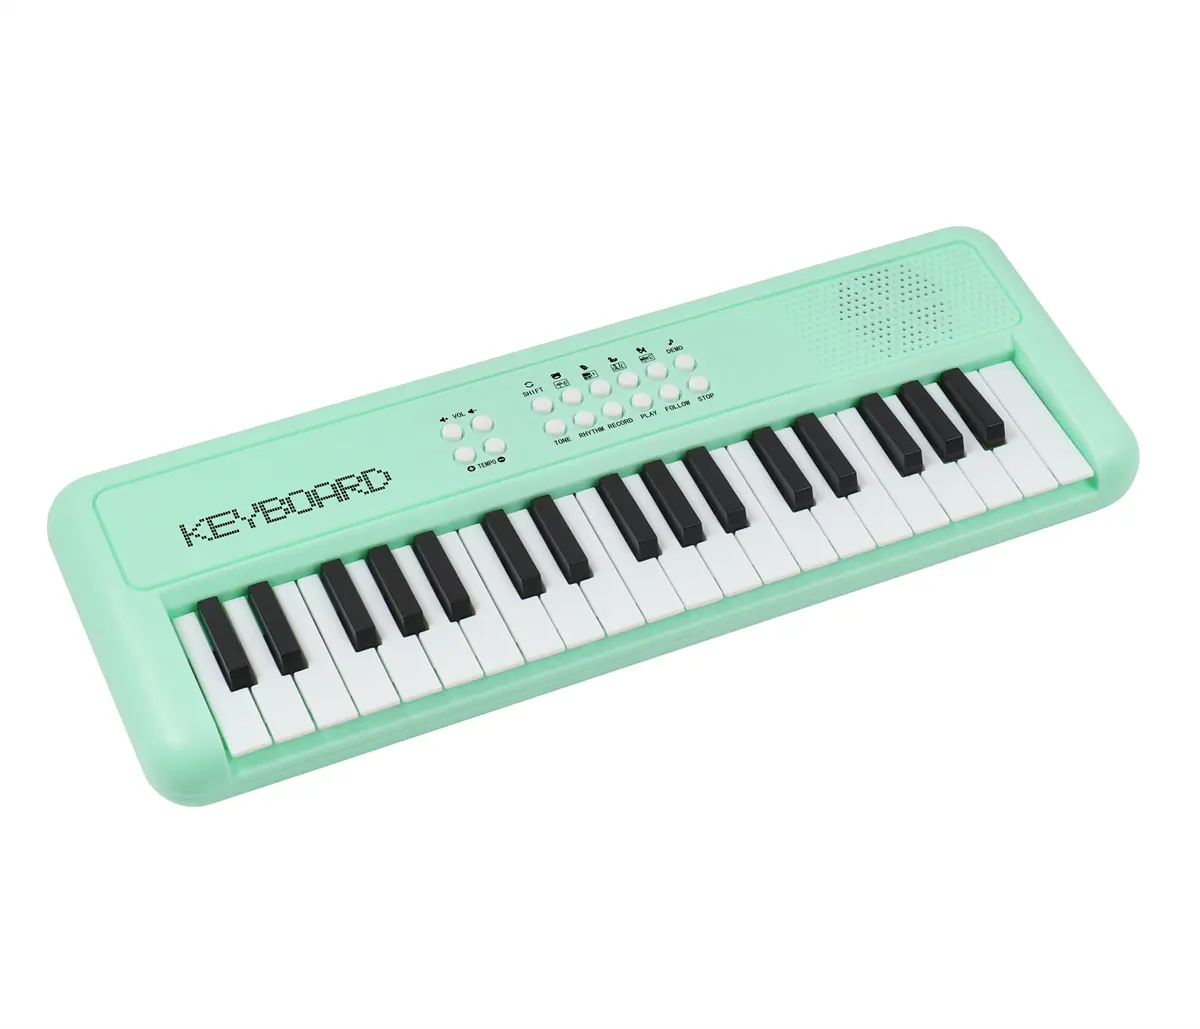 Детская игрушка, музыкальное пианино, подарок, 37 клавиш, высококачественный электронный орган, обучающая музыкальная игрушка, рояль, клавиатура в зеленом цвете для детей